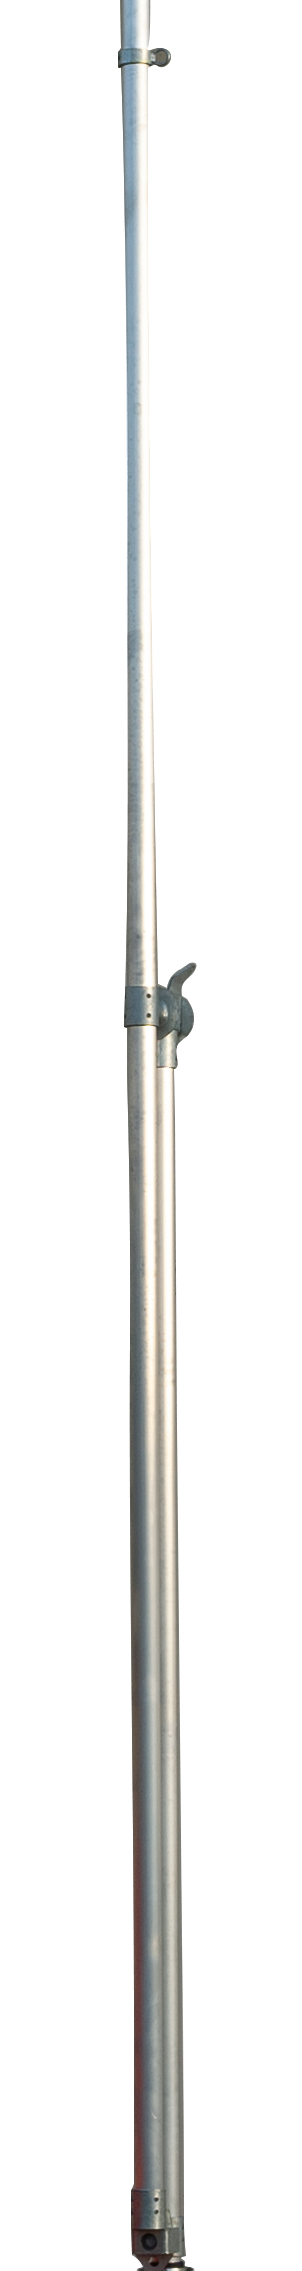 Giraffe Pole (MOPU-G5 Ali)